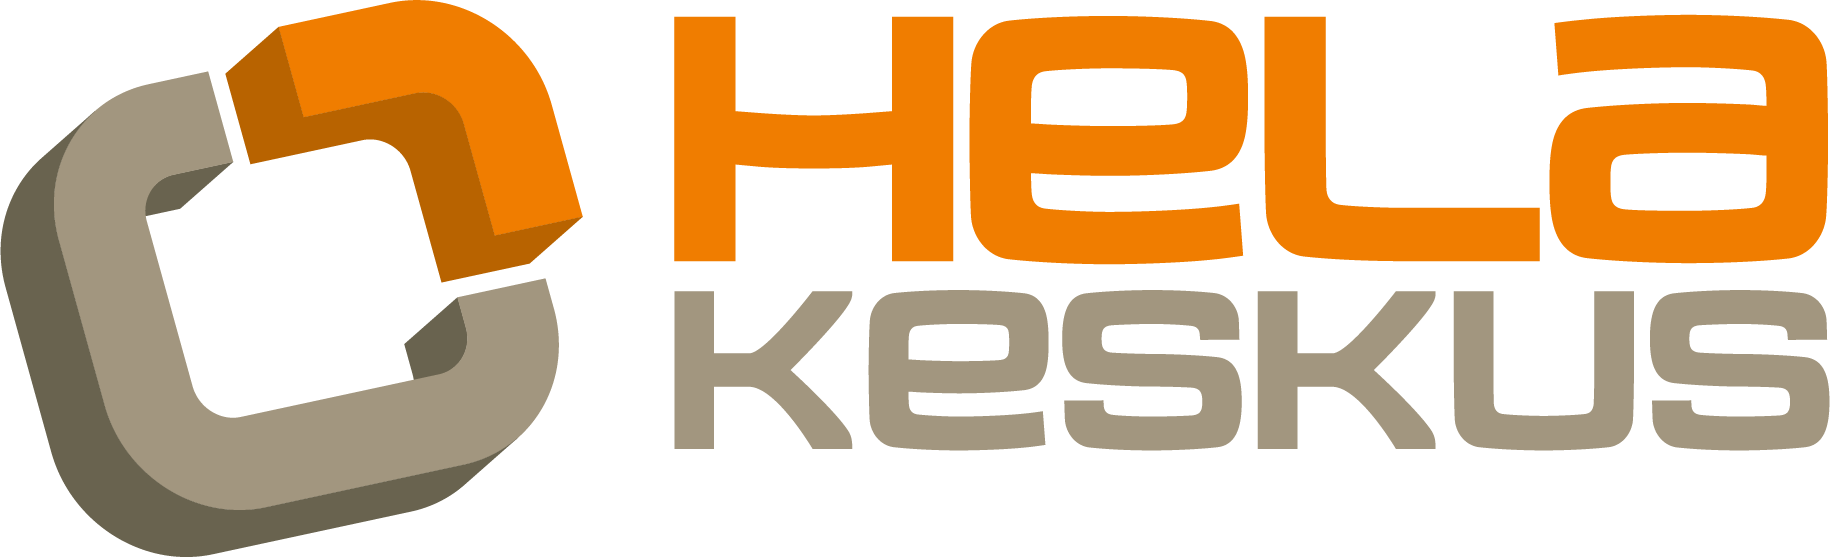 Helakeskus-logo